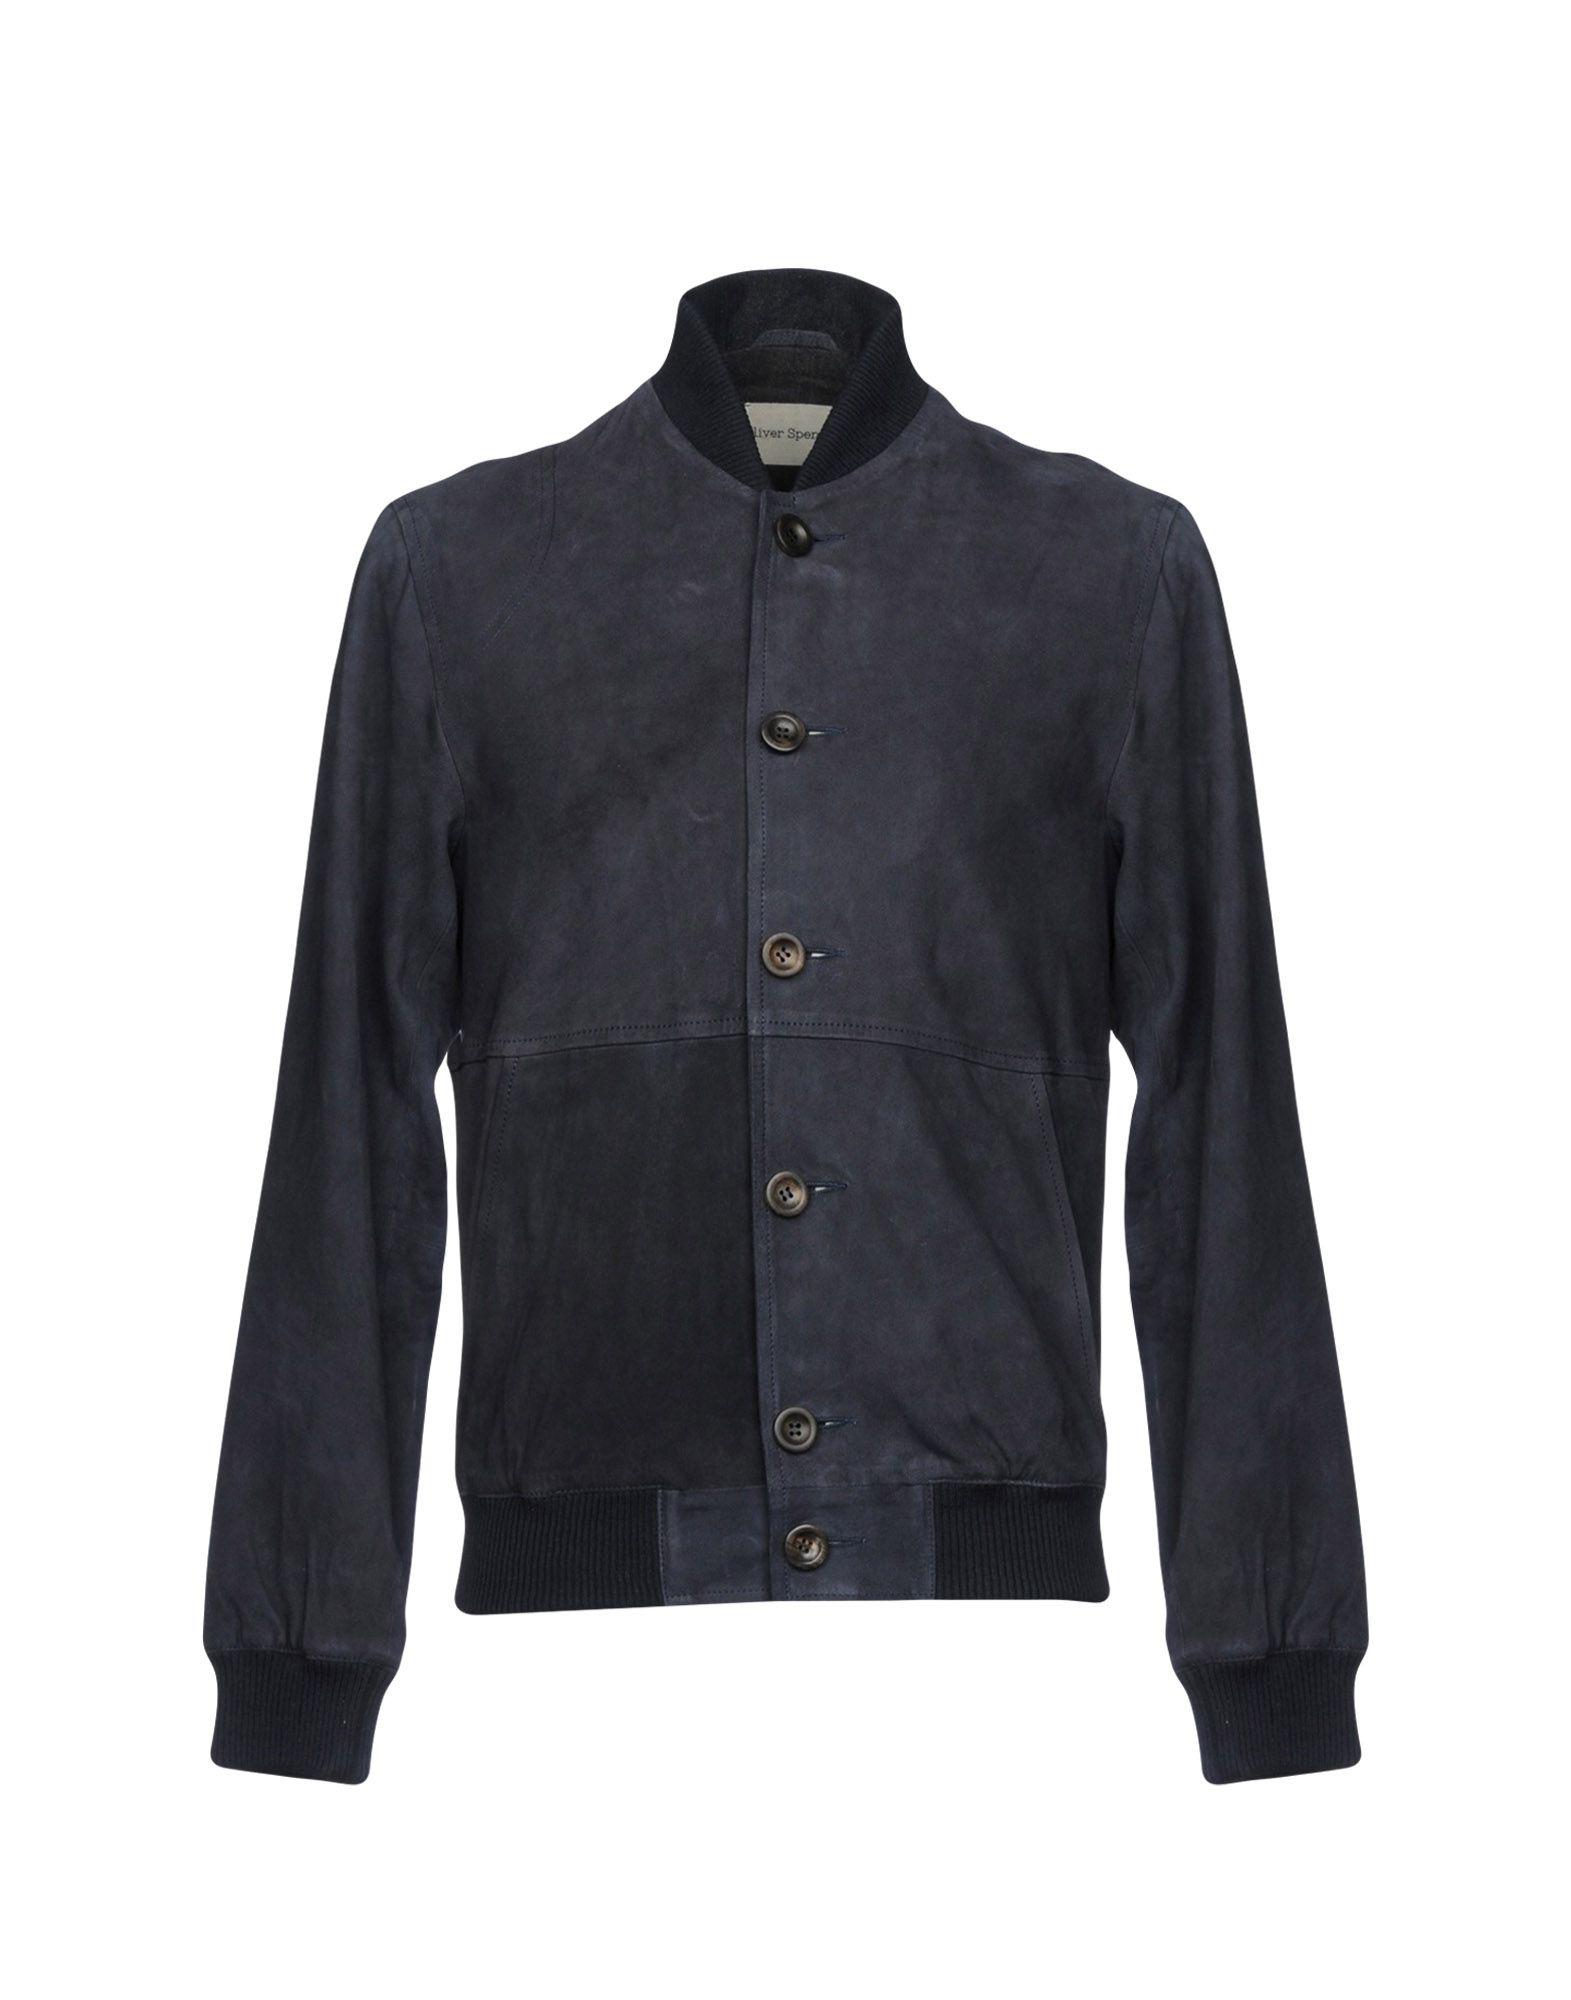 Oliver Spencer Leather Jacket in Dark Blue (Blue) for Men - Lyst